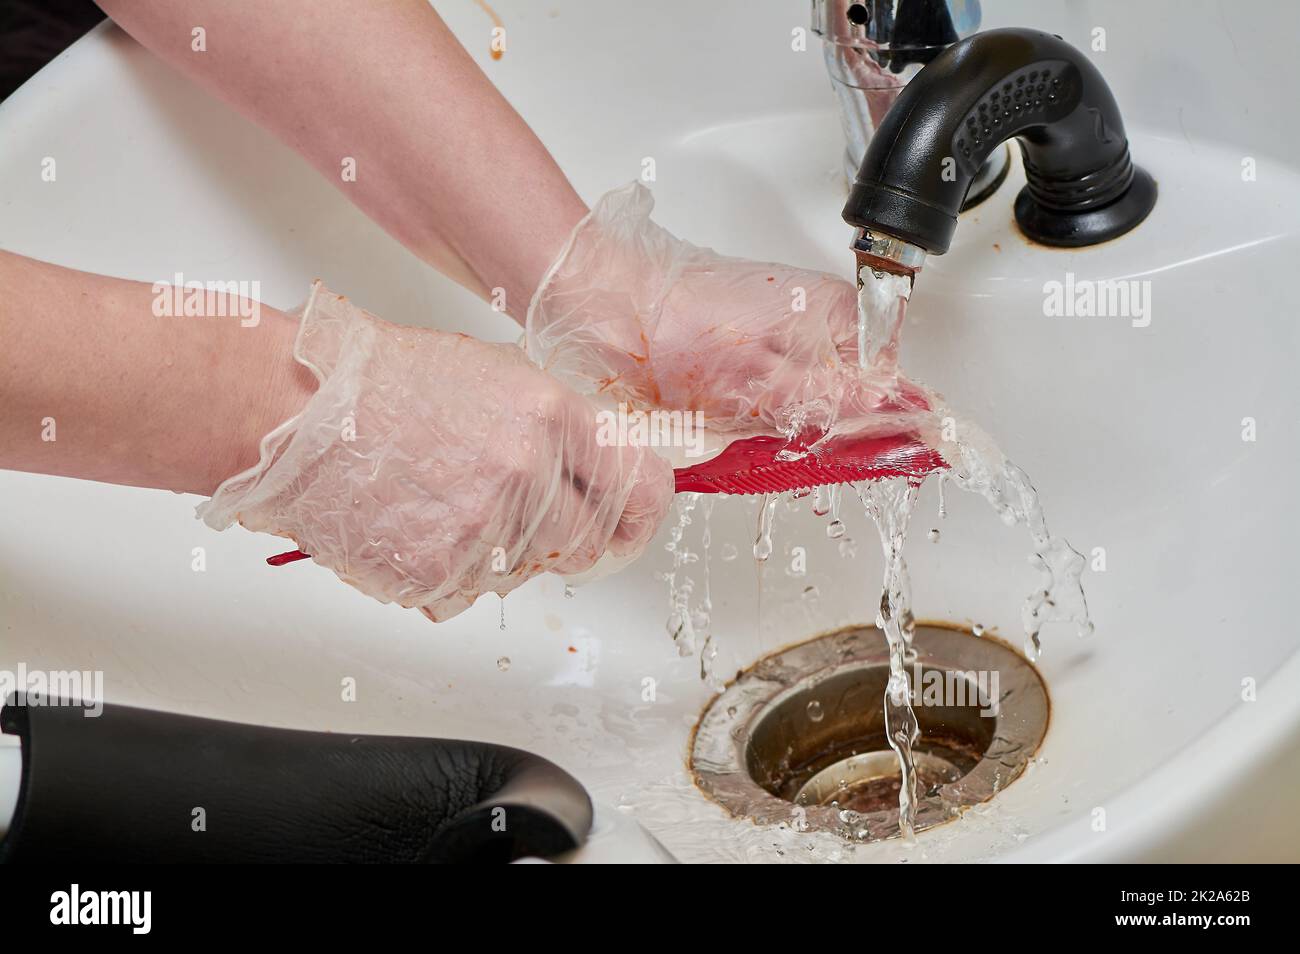 Frauenhände in Haarfärbehandschuhen waschen einen Kamm unter einem Wasserstrahl in einem weißen Waschbecken Stockfoto